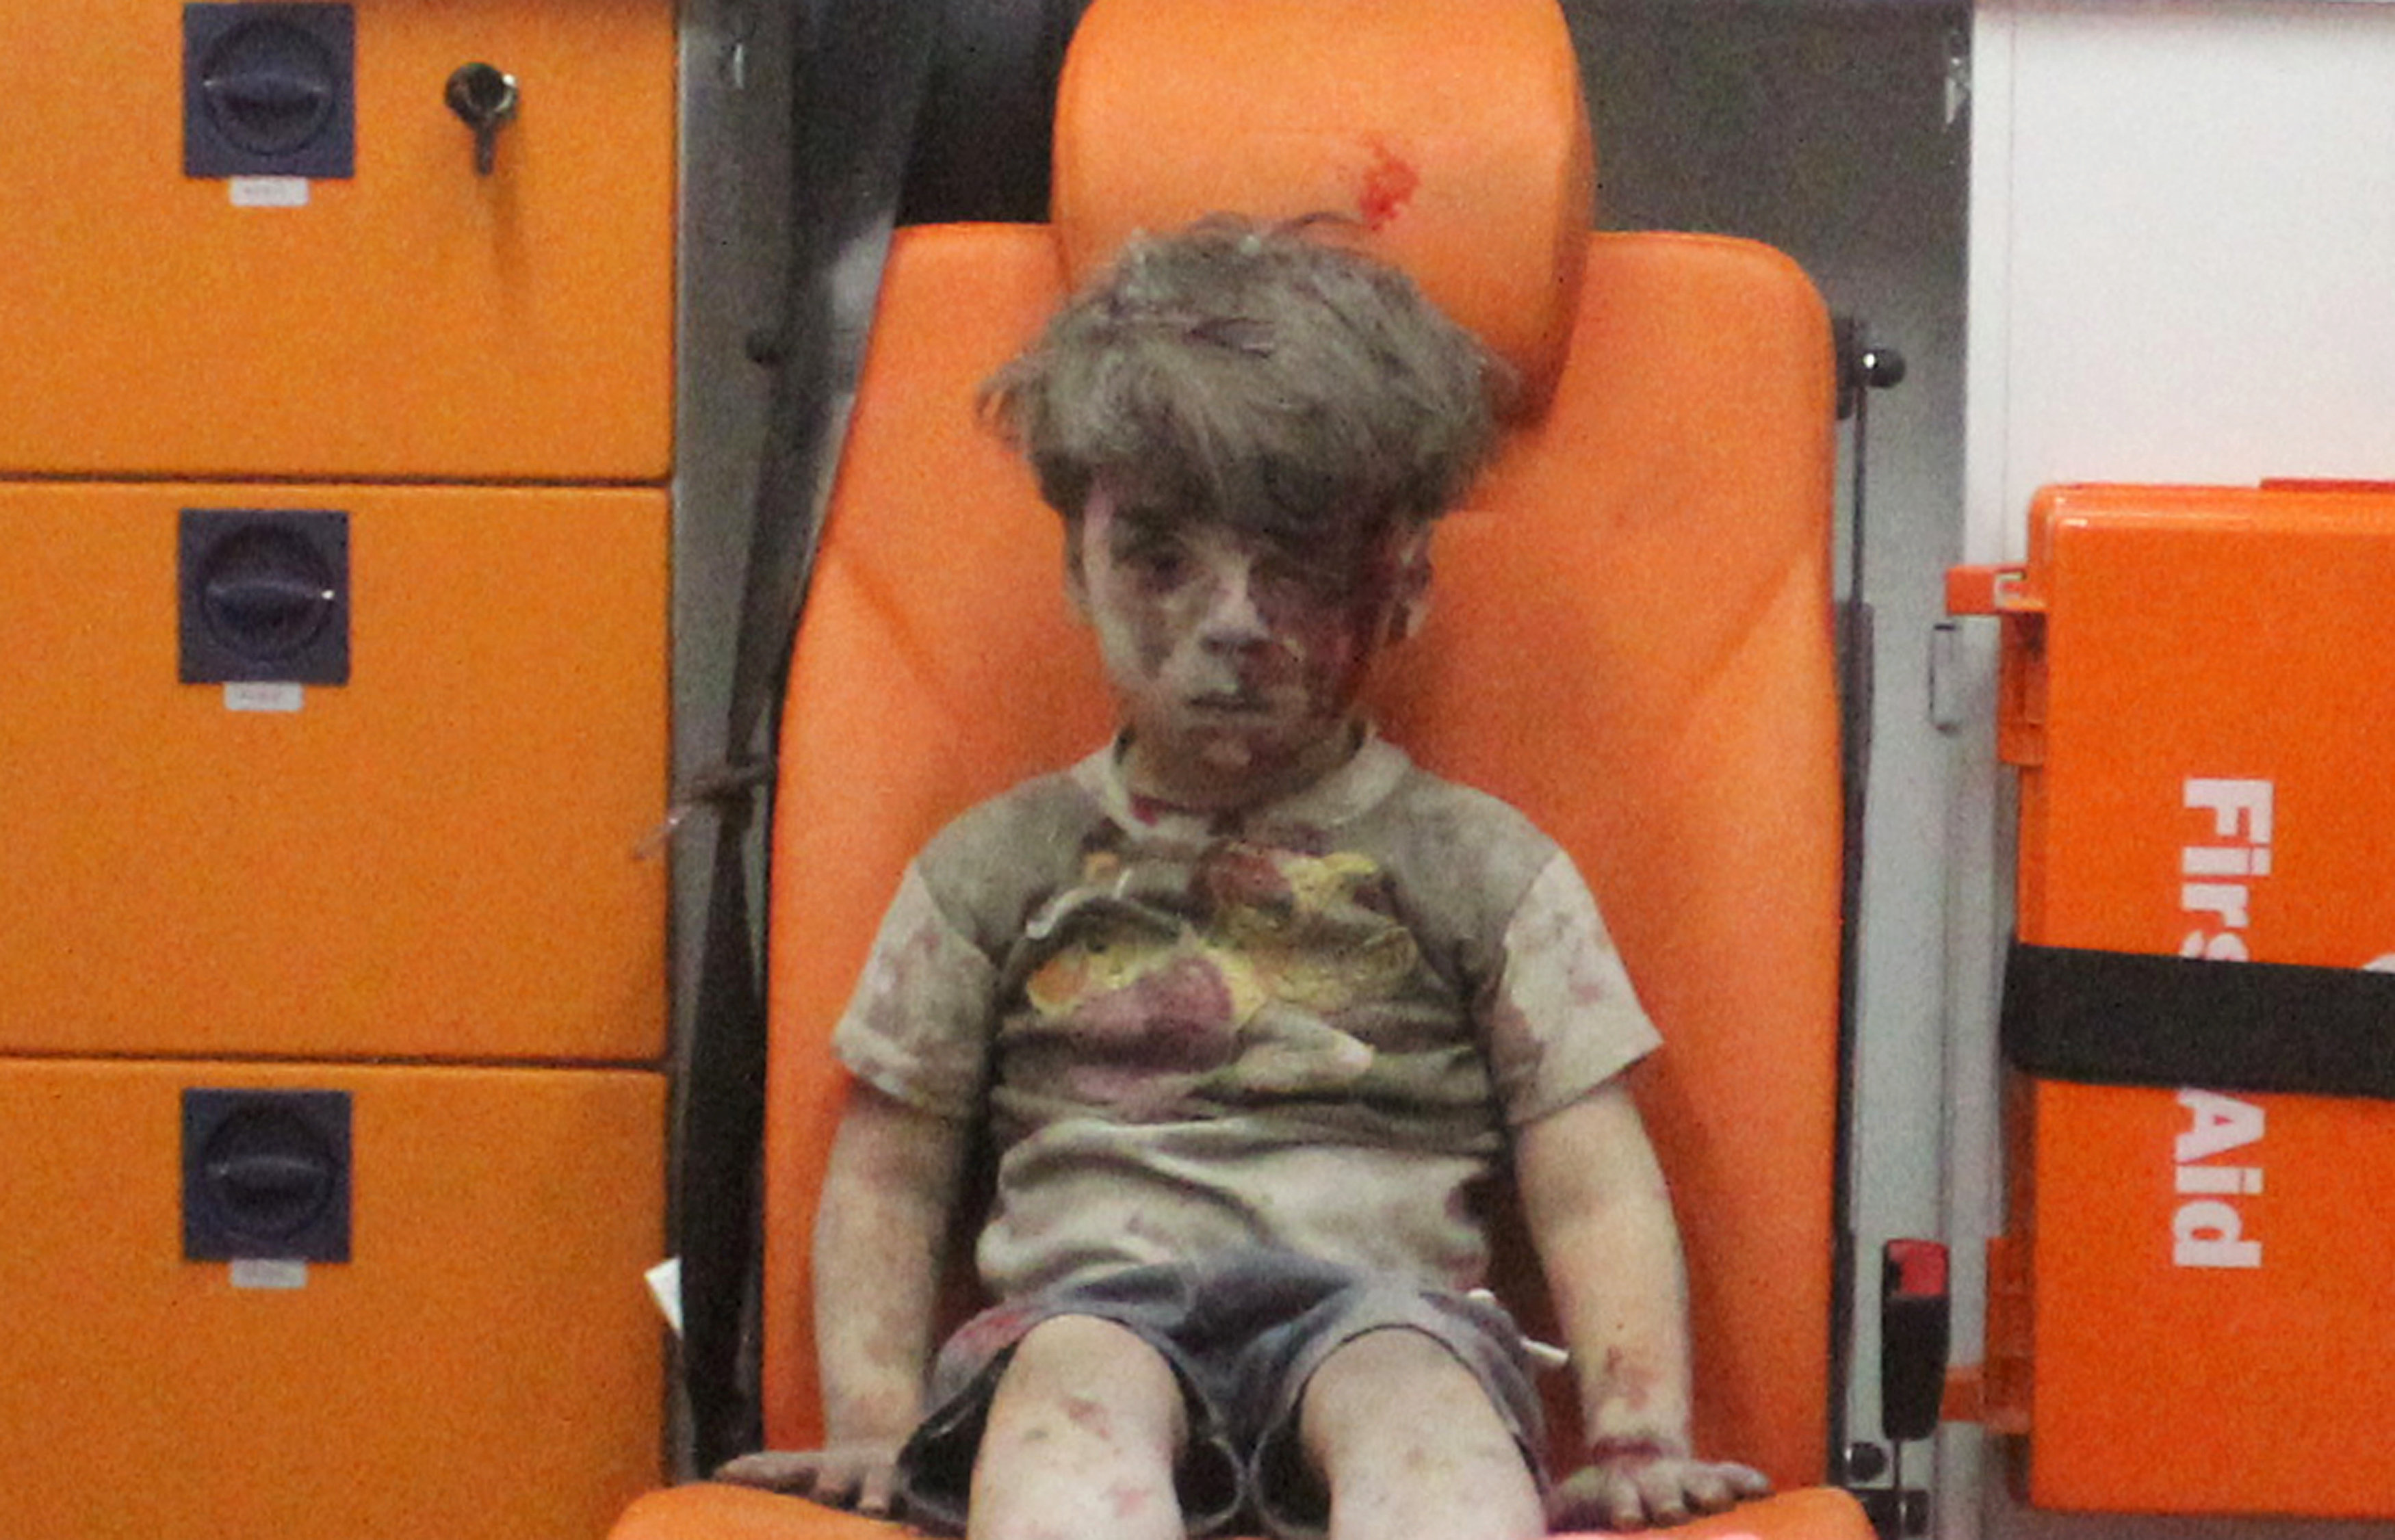 Bức ảnh về Omran Daqneesh với ánh nhìn ngơ ngác và mệt mỏi trên xe cứu thương - Ảnh: Reuters